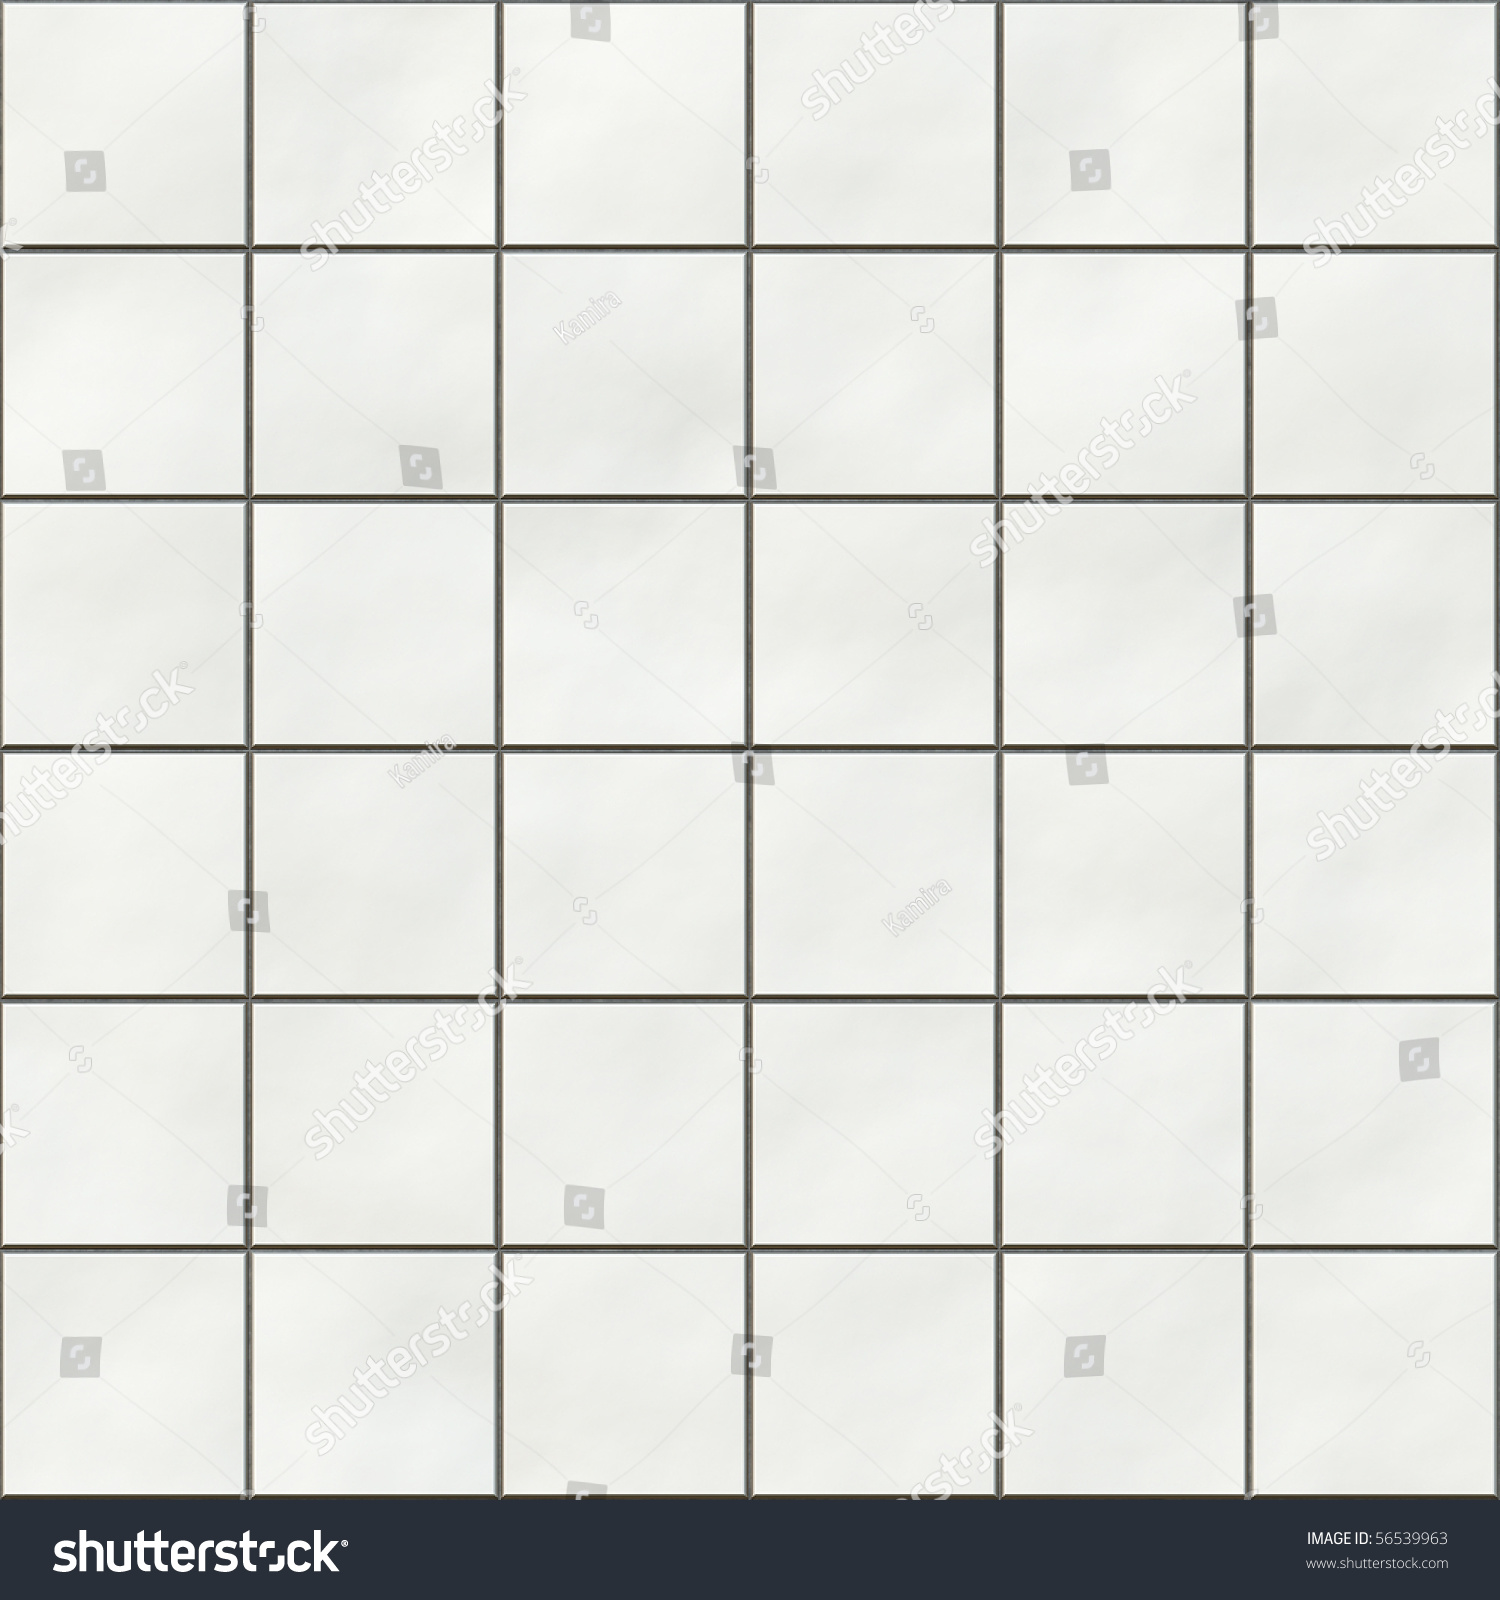 Seamless White Square Tiles Texture Stock Illustration 56539963 ...